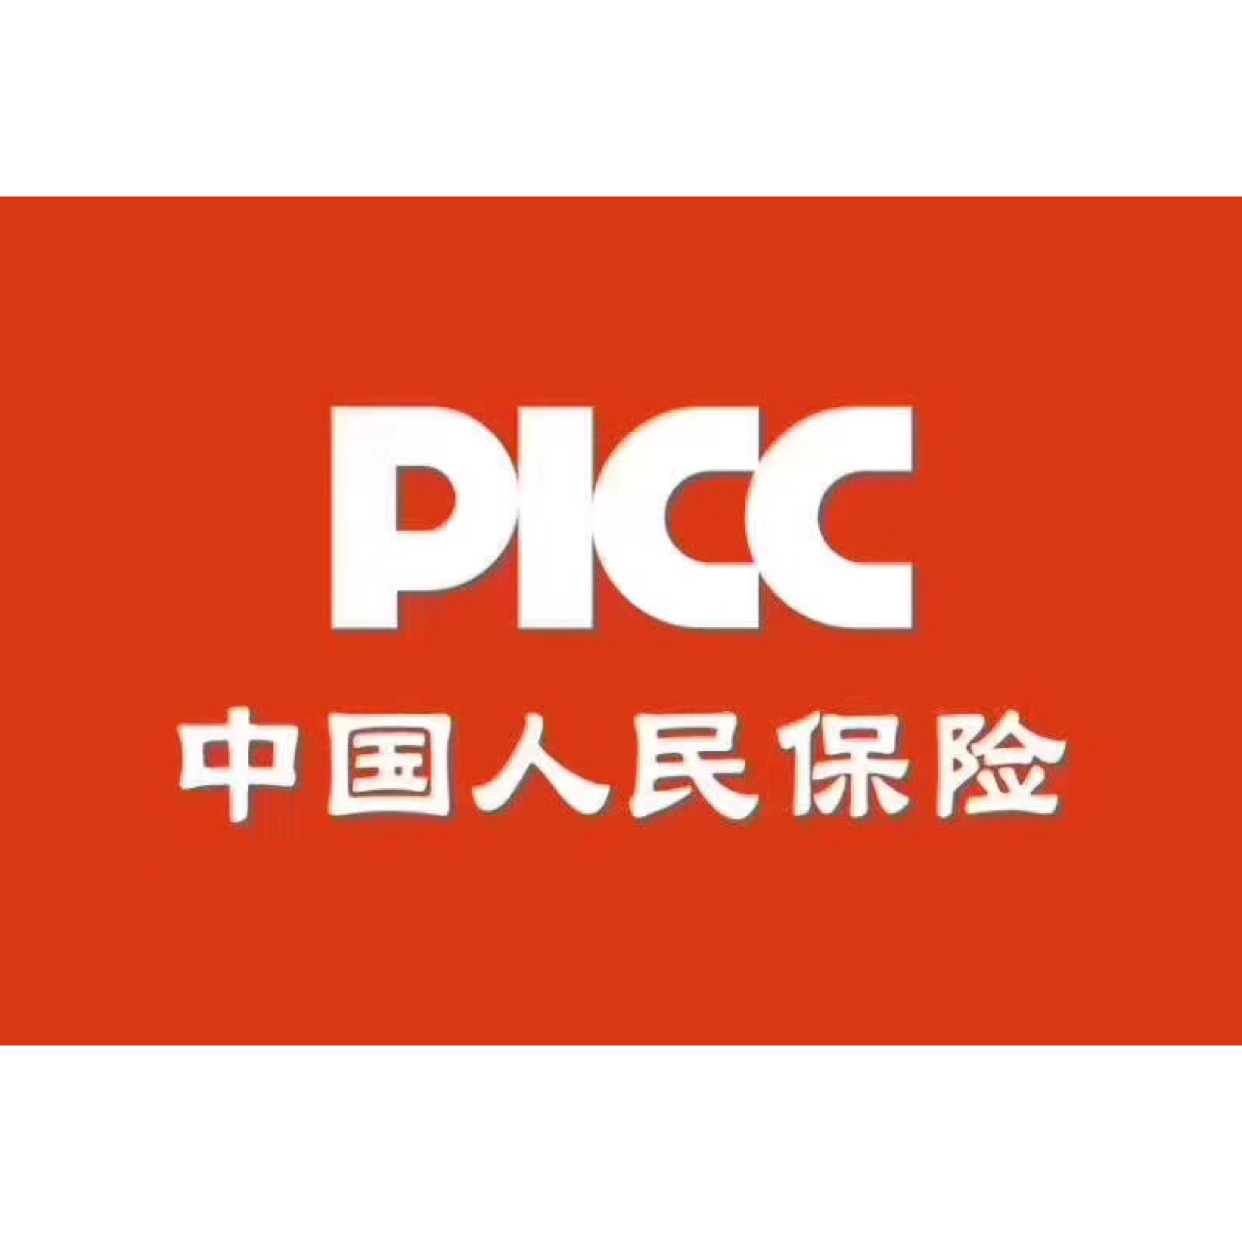 是"世界500强"中国人民保险集团股份有限公司(picc)的核心成员和标志